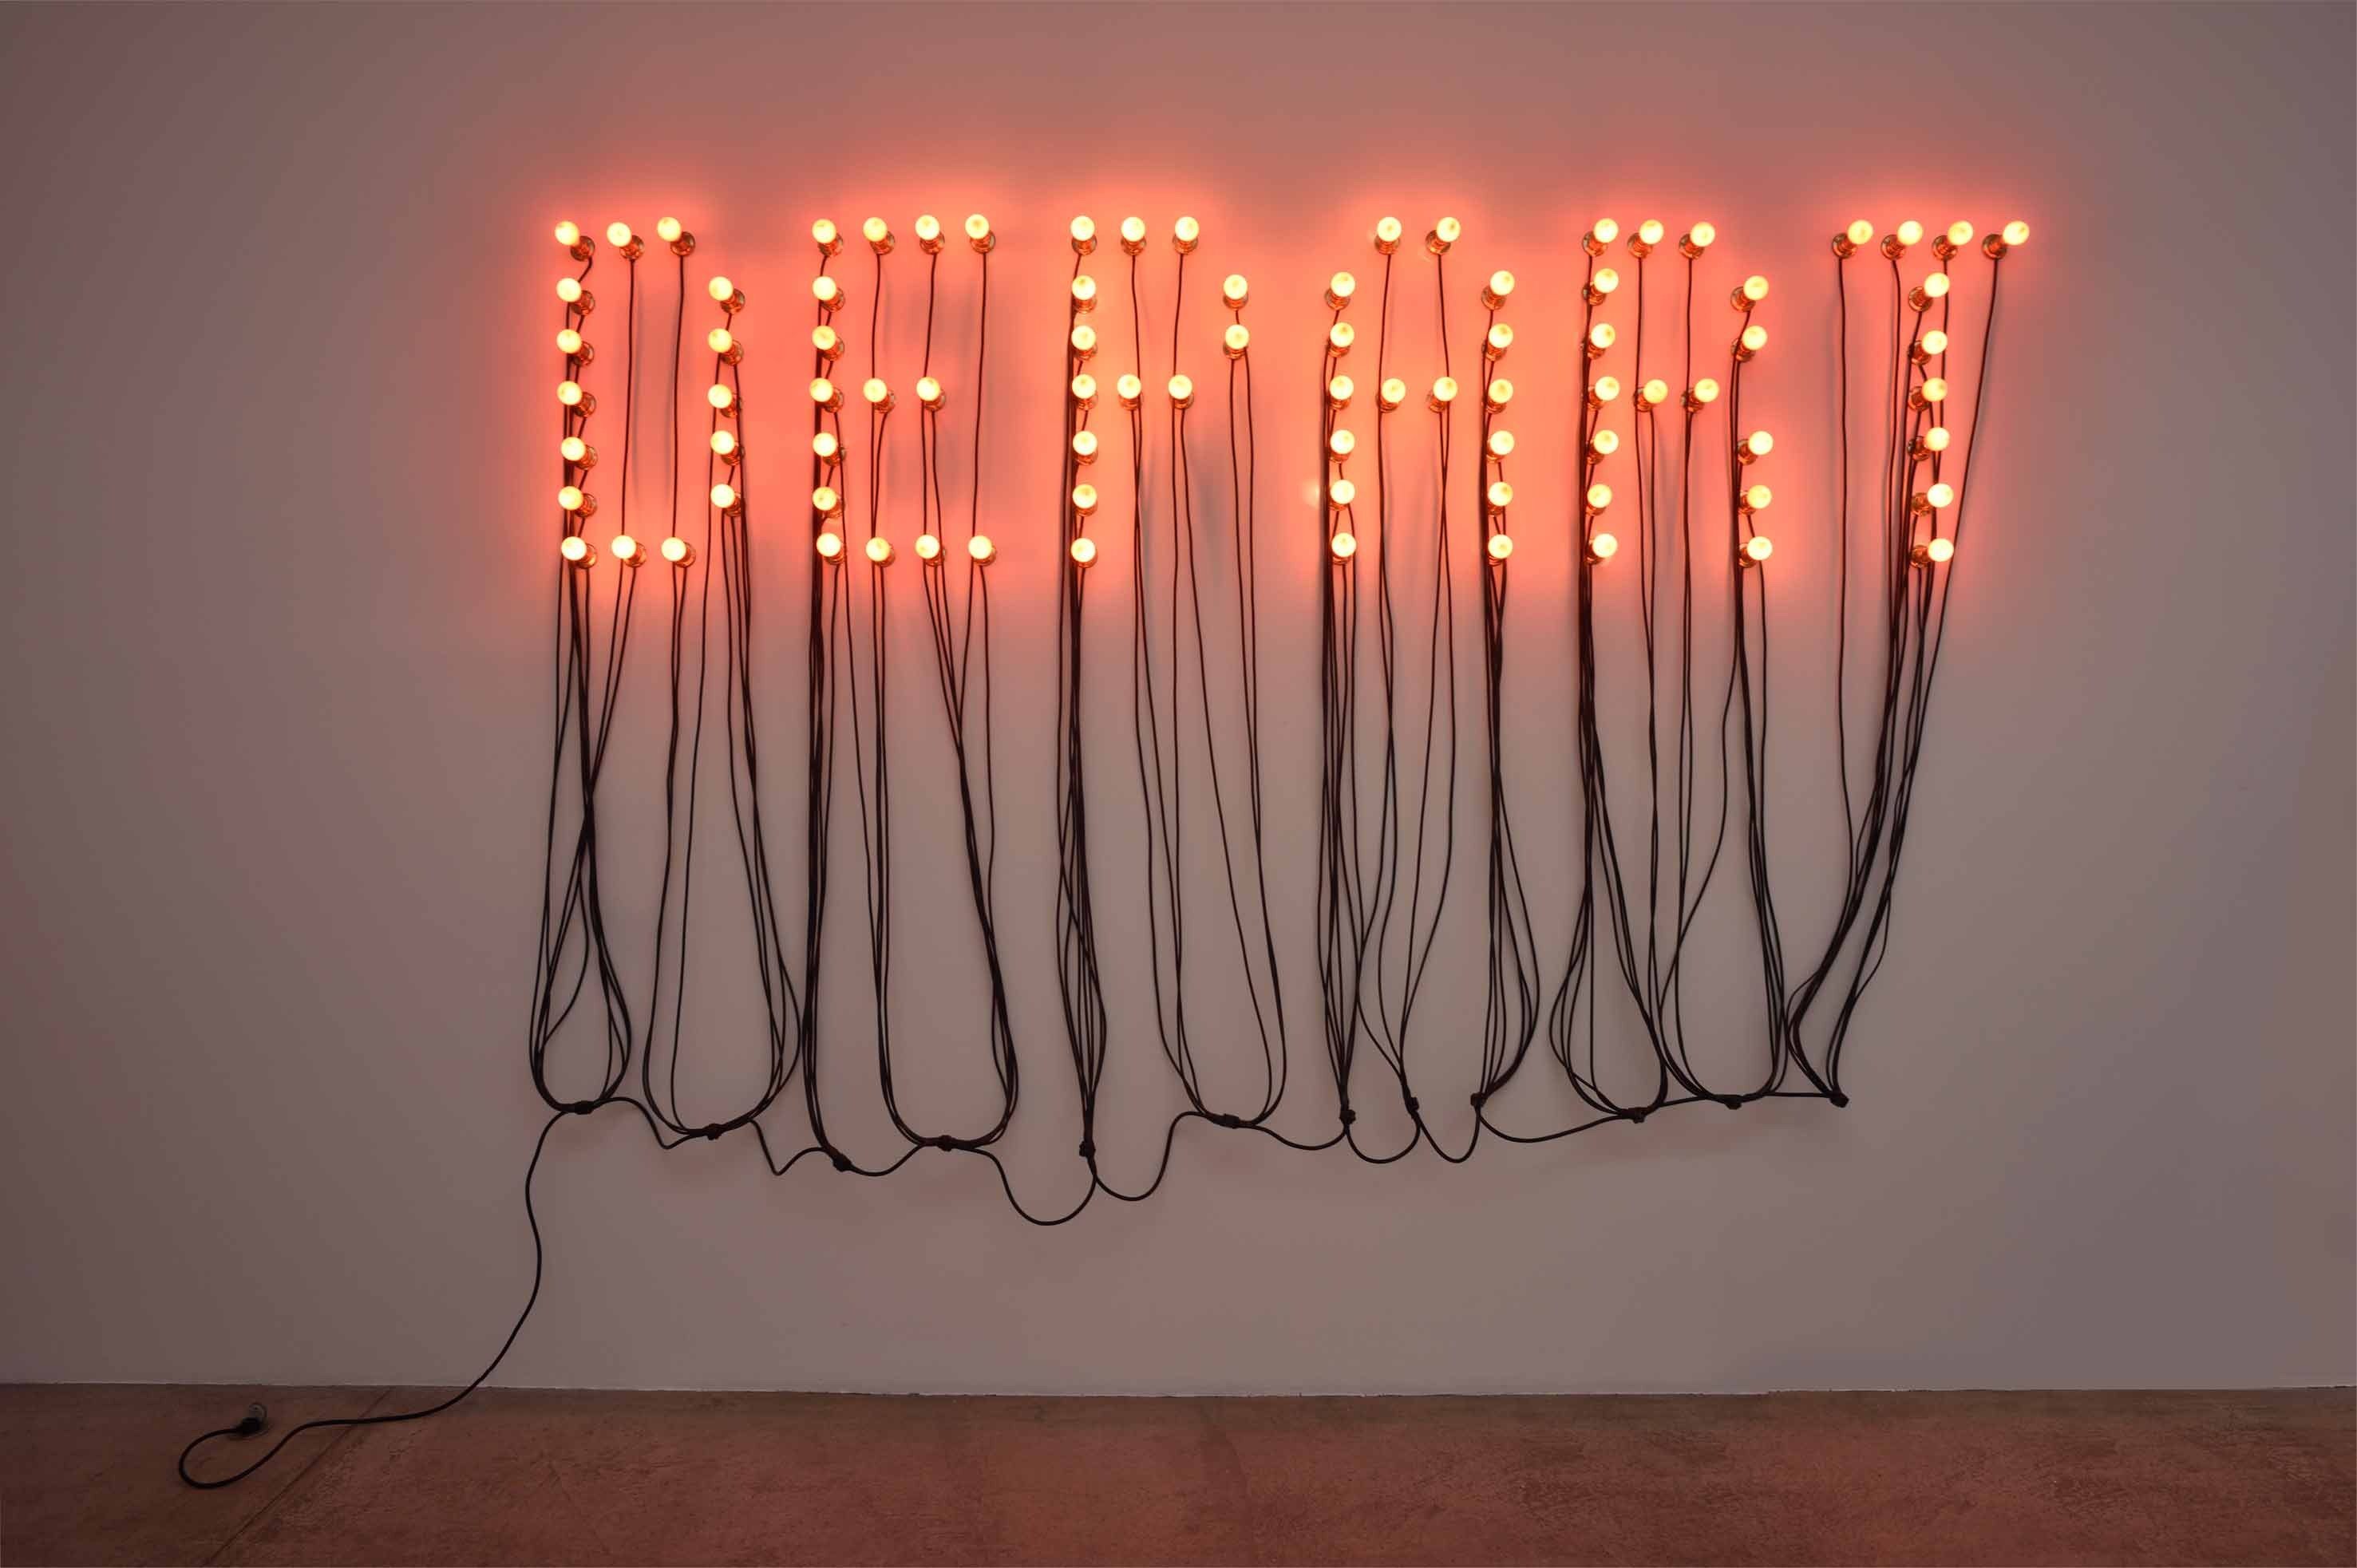 Départ - Arrivée, 2015, 86 red light bulbs, electric wire, 185 x 283 cm.     Courtesy de l'artiste et Marian Goodman Gallery.  Photo : Rébecca Fanuele